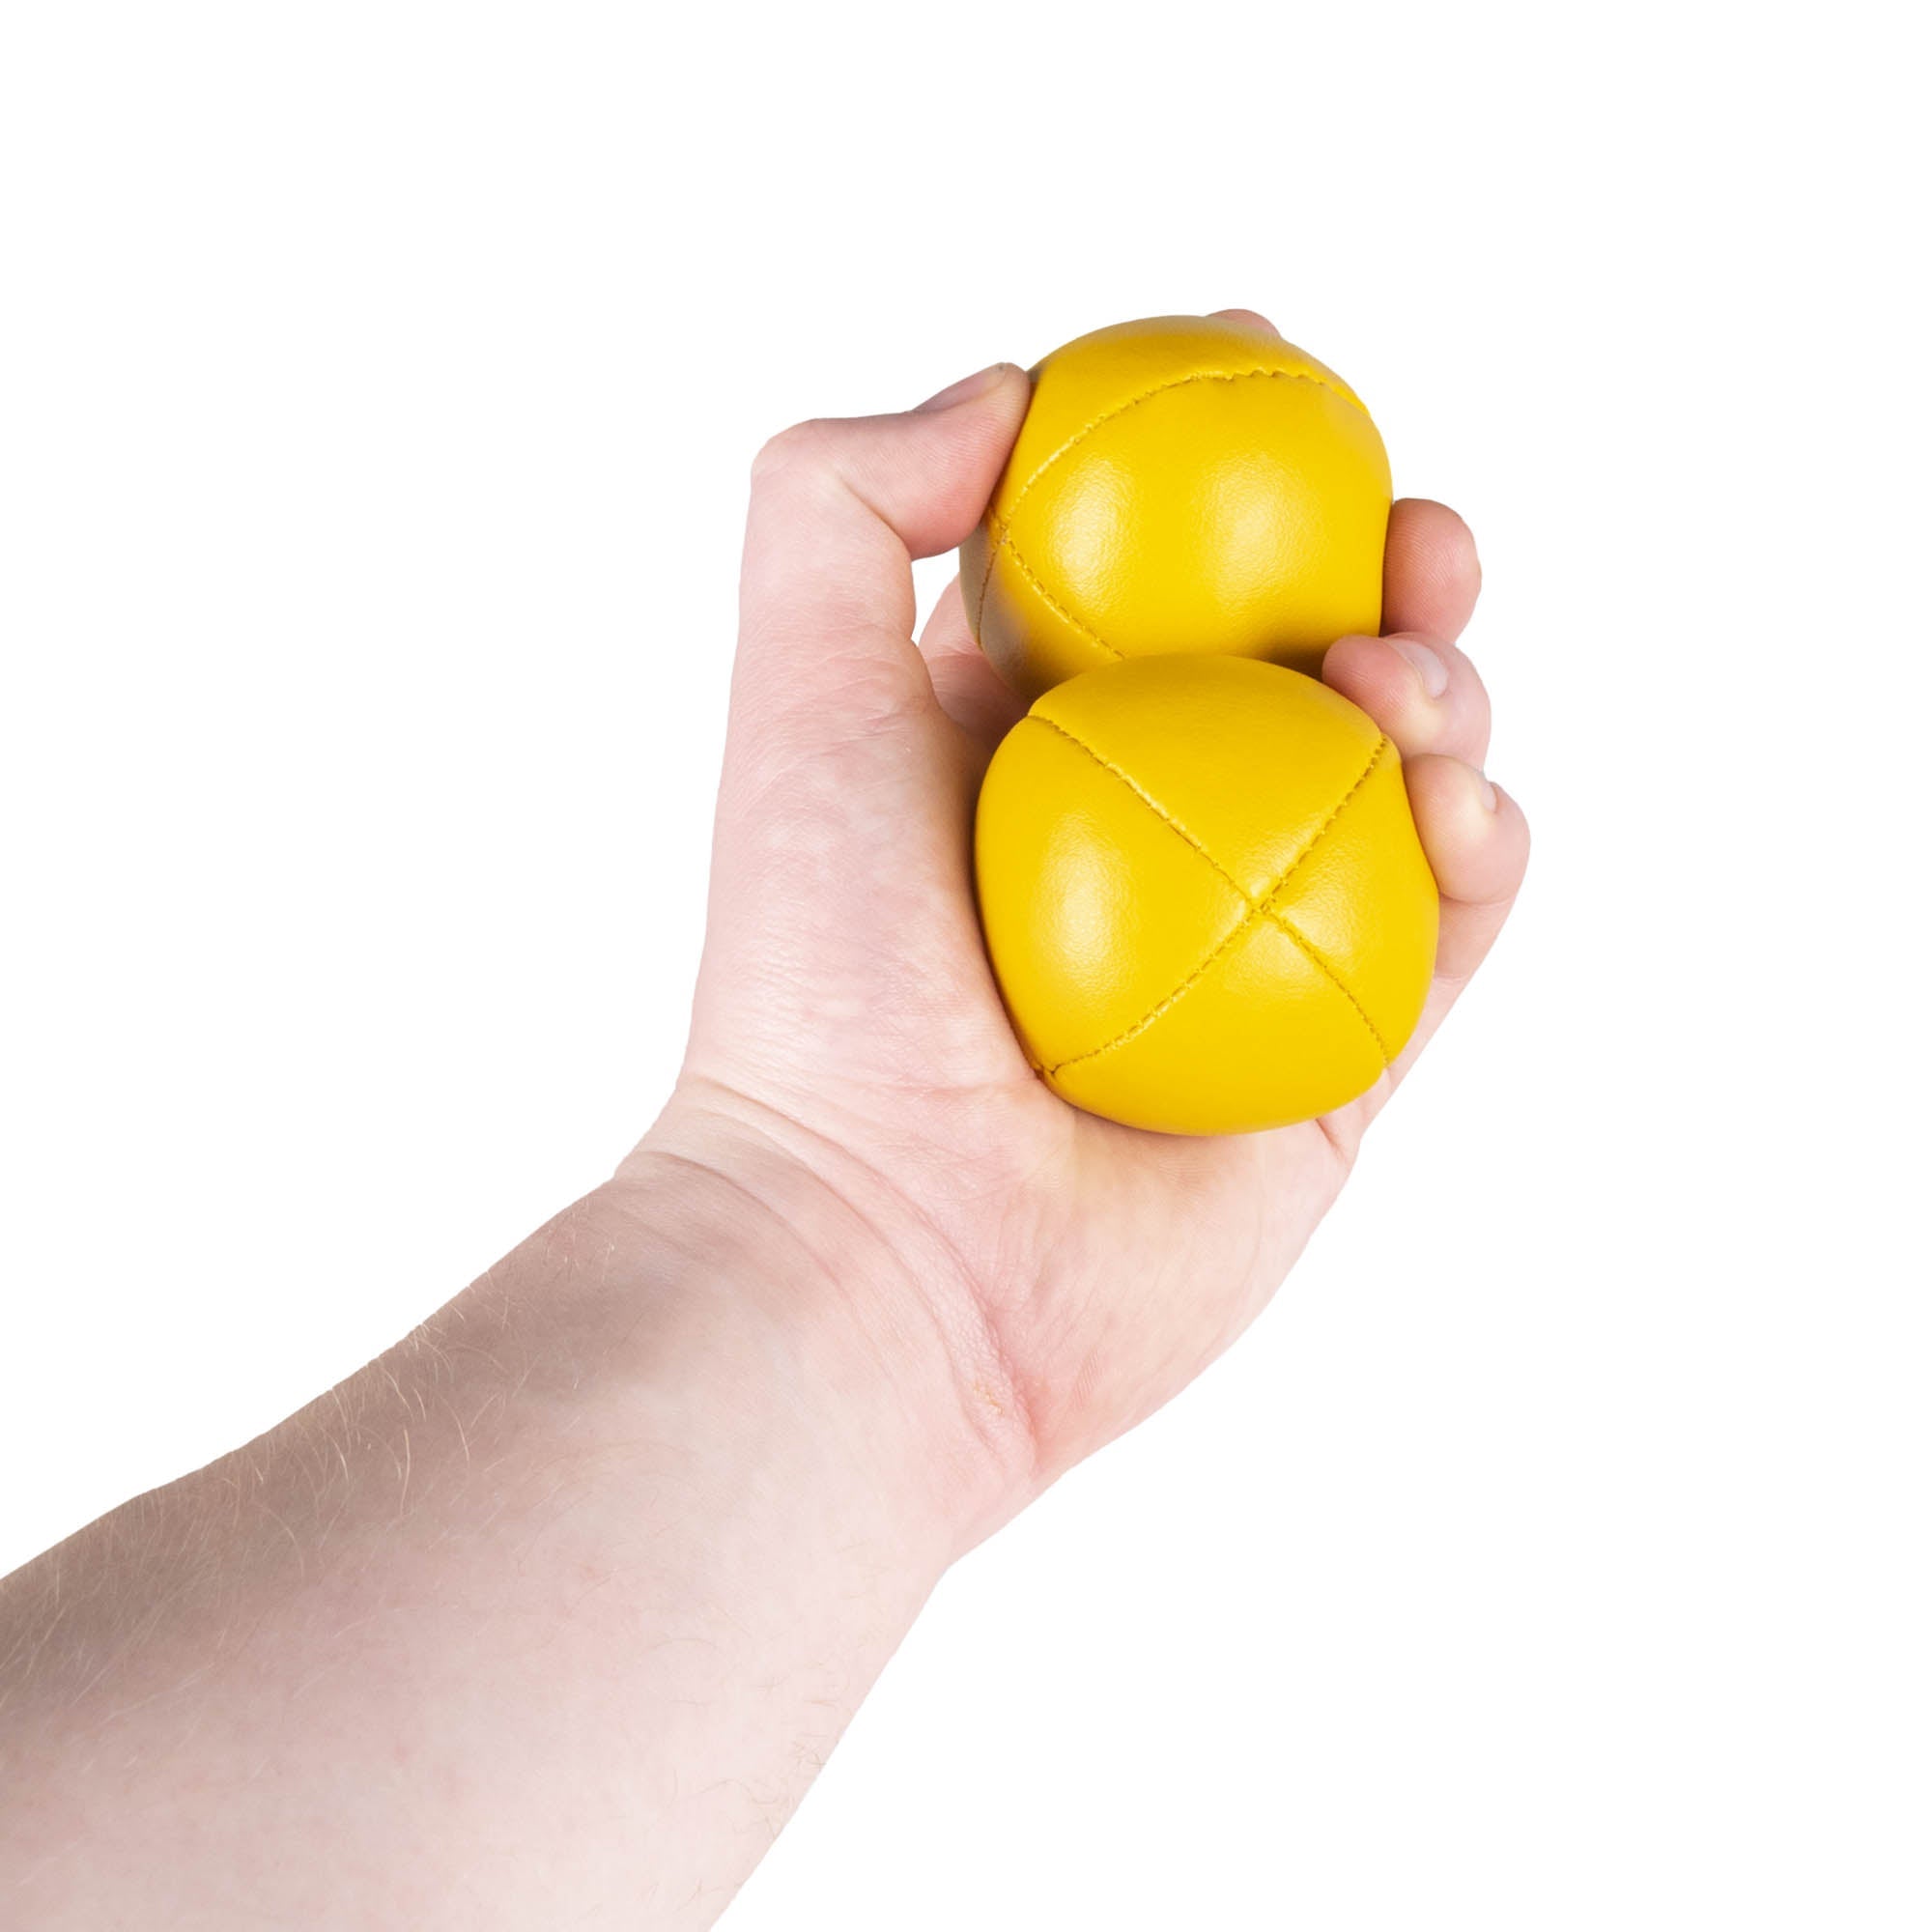 2 yellow balls in hand